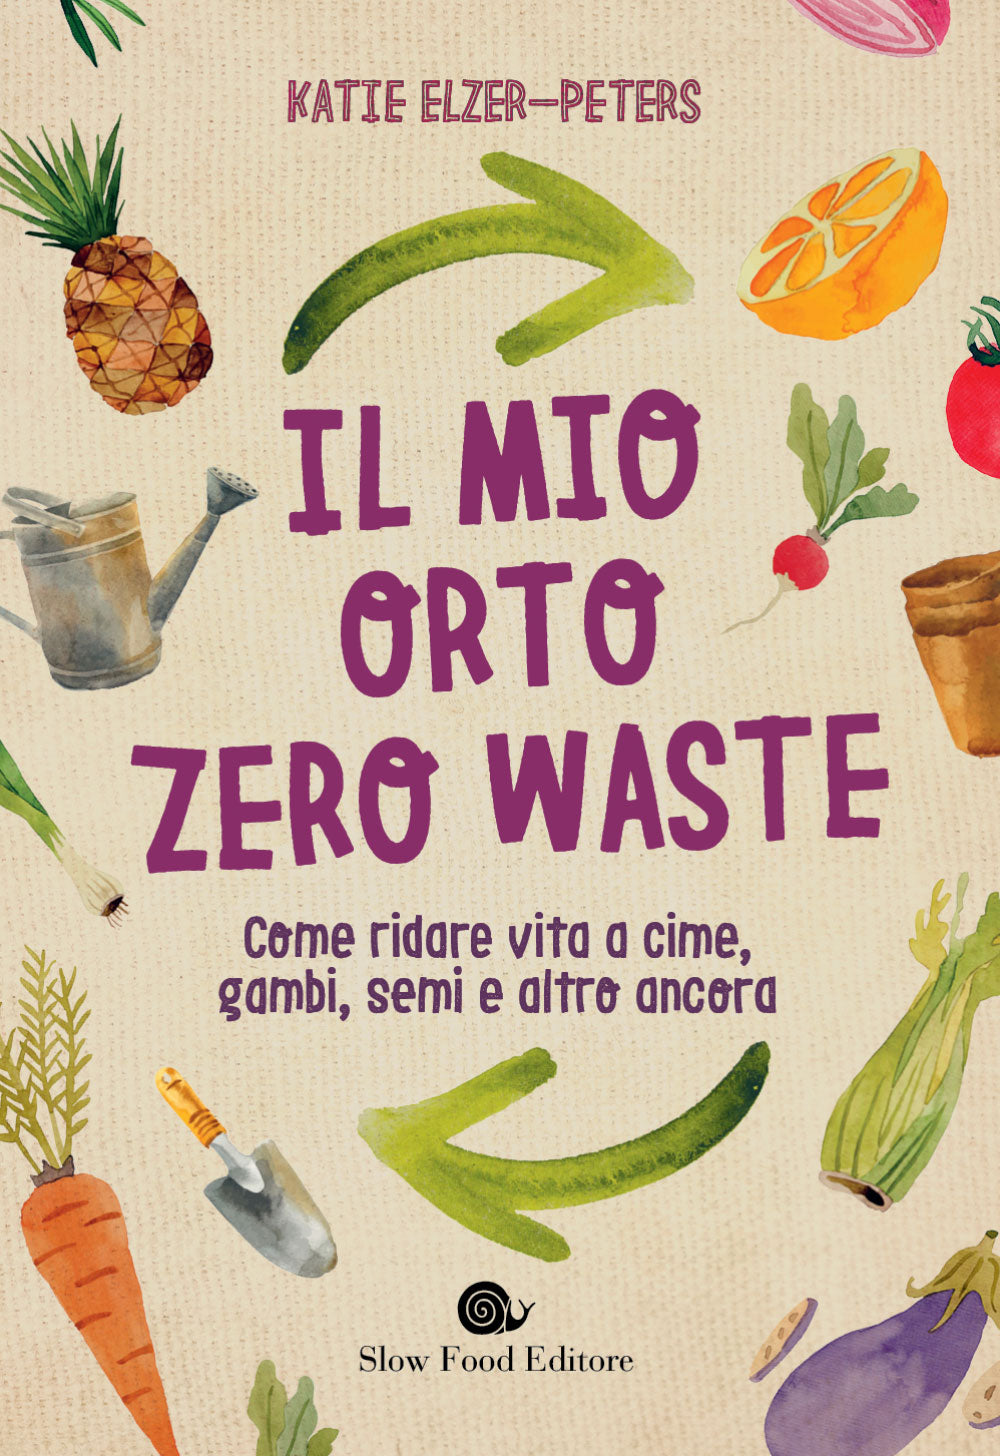 Il mio orto zero waste::Come ridare vita a cime, gambi, semi e altro ancora.